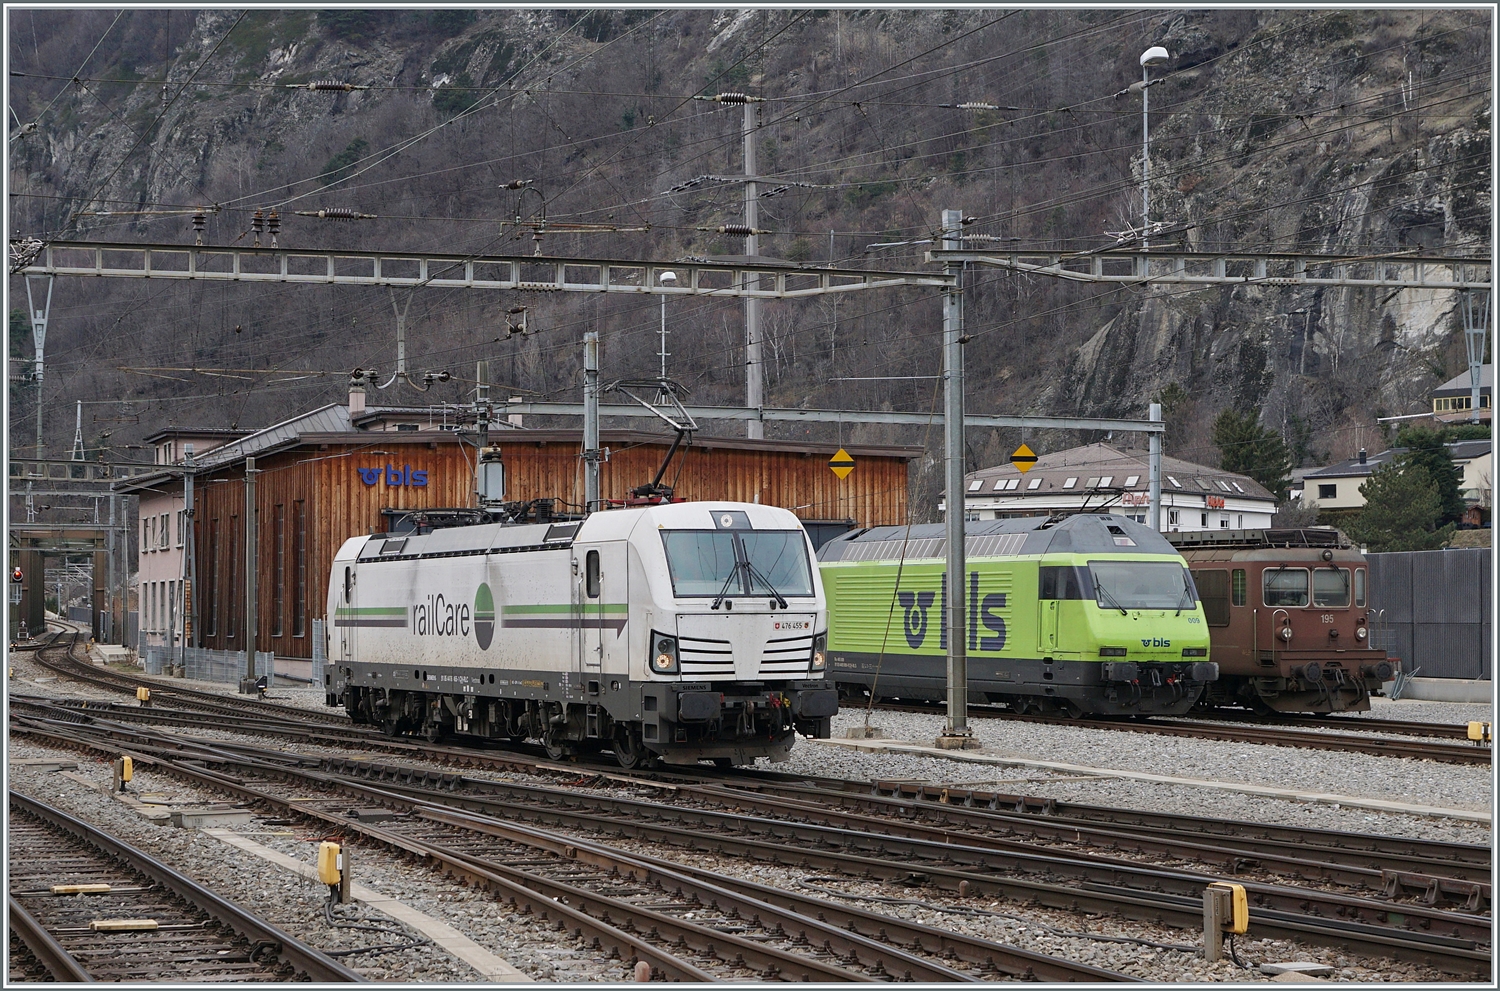 Eine kleine, zufällige Lokparade in Brig: Rechts im Bild steht die BLS Re 4/4 195, daneben die BLS Re 465 009 und im Vordergrund rangiert die Rail-Care Rem 476 455  Bern  (UIC 91 85 4476 455-1 CH-RLC). 
Dazu noch zwei Anmerkungen:
1.) Die ersten  BLS Re 4/4 wurden 1964 als Ae 4/4 abgeliefert, die Rem 476 dürfen seit kurzem nur noch als Zugreihe A bzw D fahren (V.max 120 km/h, keine erhöhte Kurvengeschwindigkeit nach der Reihe  R );  oder auf den Punkt gebracht: die alten BLS Re 4/4 haben einer höhere zugelassene Geschwindigkeit als die modernen Vectron Loks, die eigentlich als Aem 476 beschriftet sein müsste. 
2.)Die hier abgebildet Re 4/4 195  Untersee  ist die letzte abgelieferte Lok dieser Baureihe, sie wurde 1983 in Dienst gestellt. Die daneben stehende BLS Re 465 009 wurde nur gut zwölf bis fünfzehn Jahre später gebaut, bez. zwischen der letzten gebauten Re 4/4 und der ersten R 465 liegen nur neun Jahre. 

2. Februar 2024